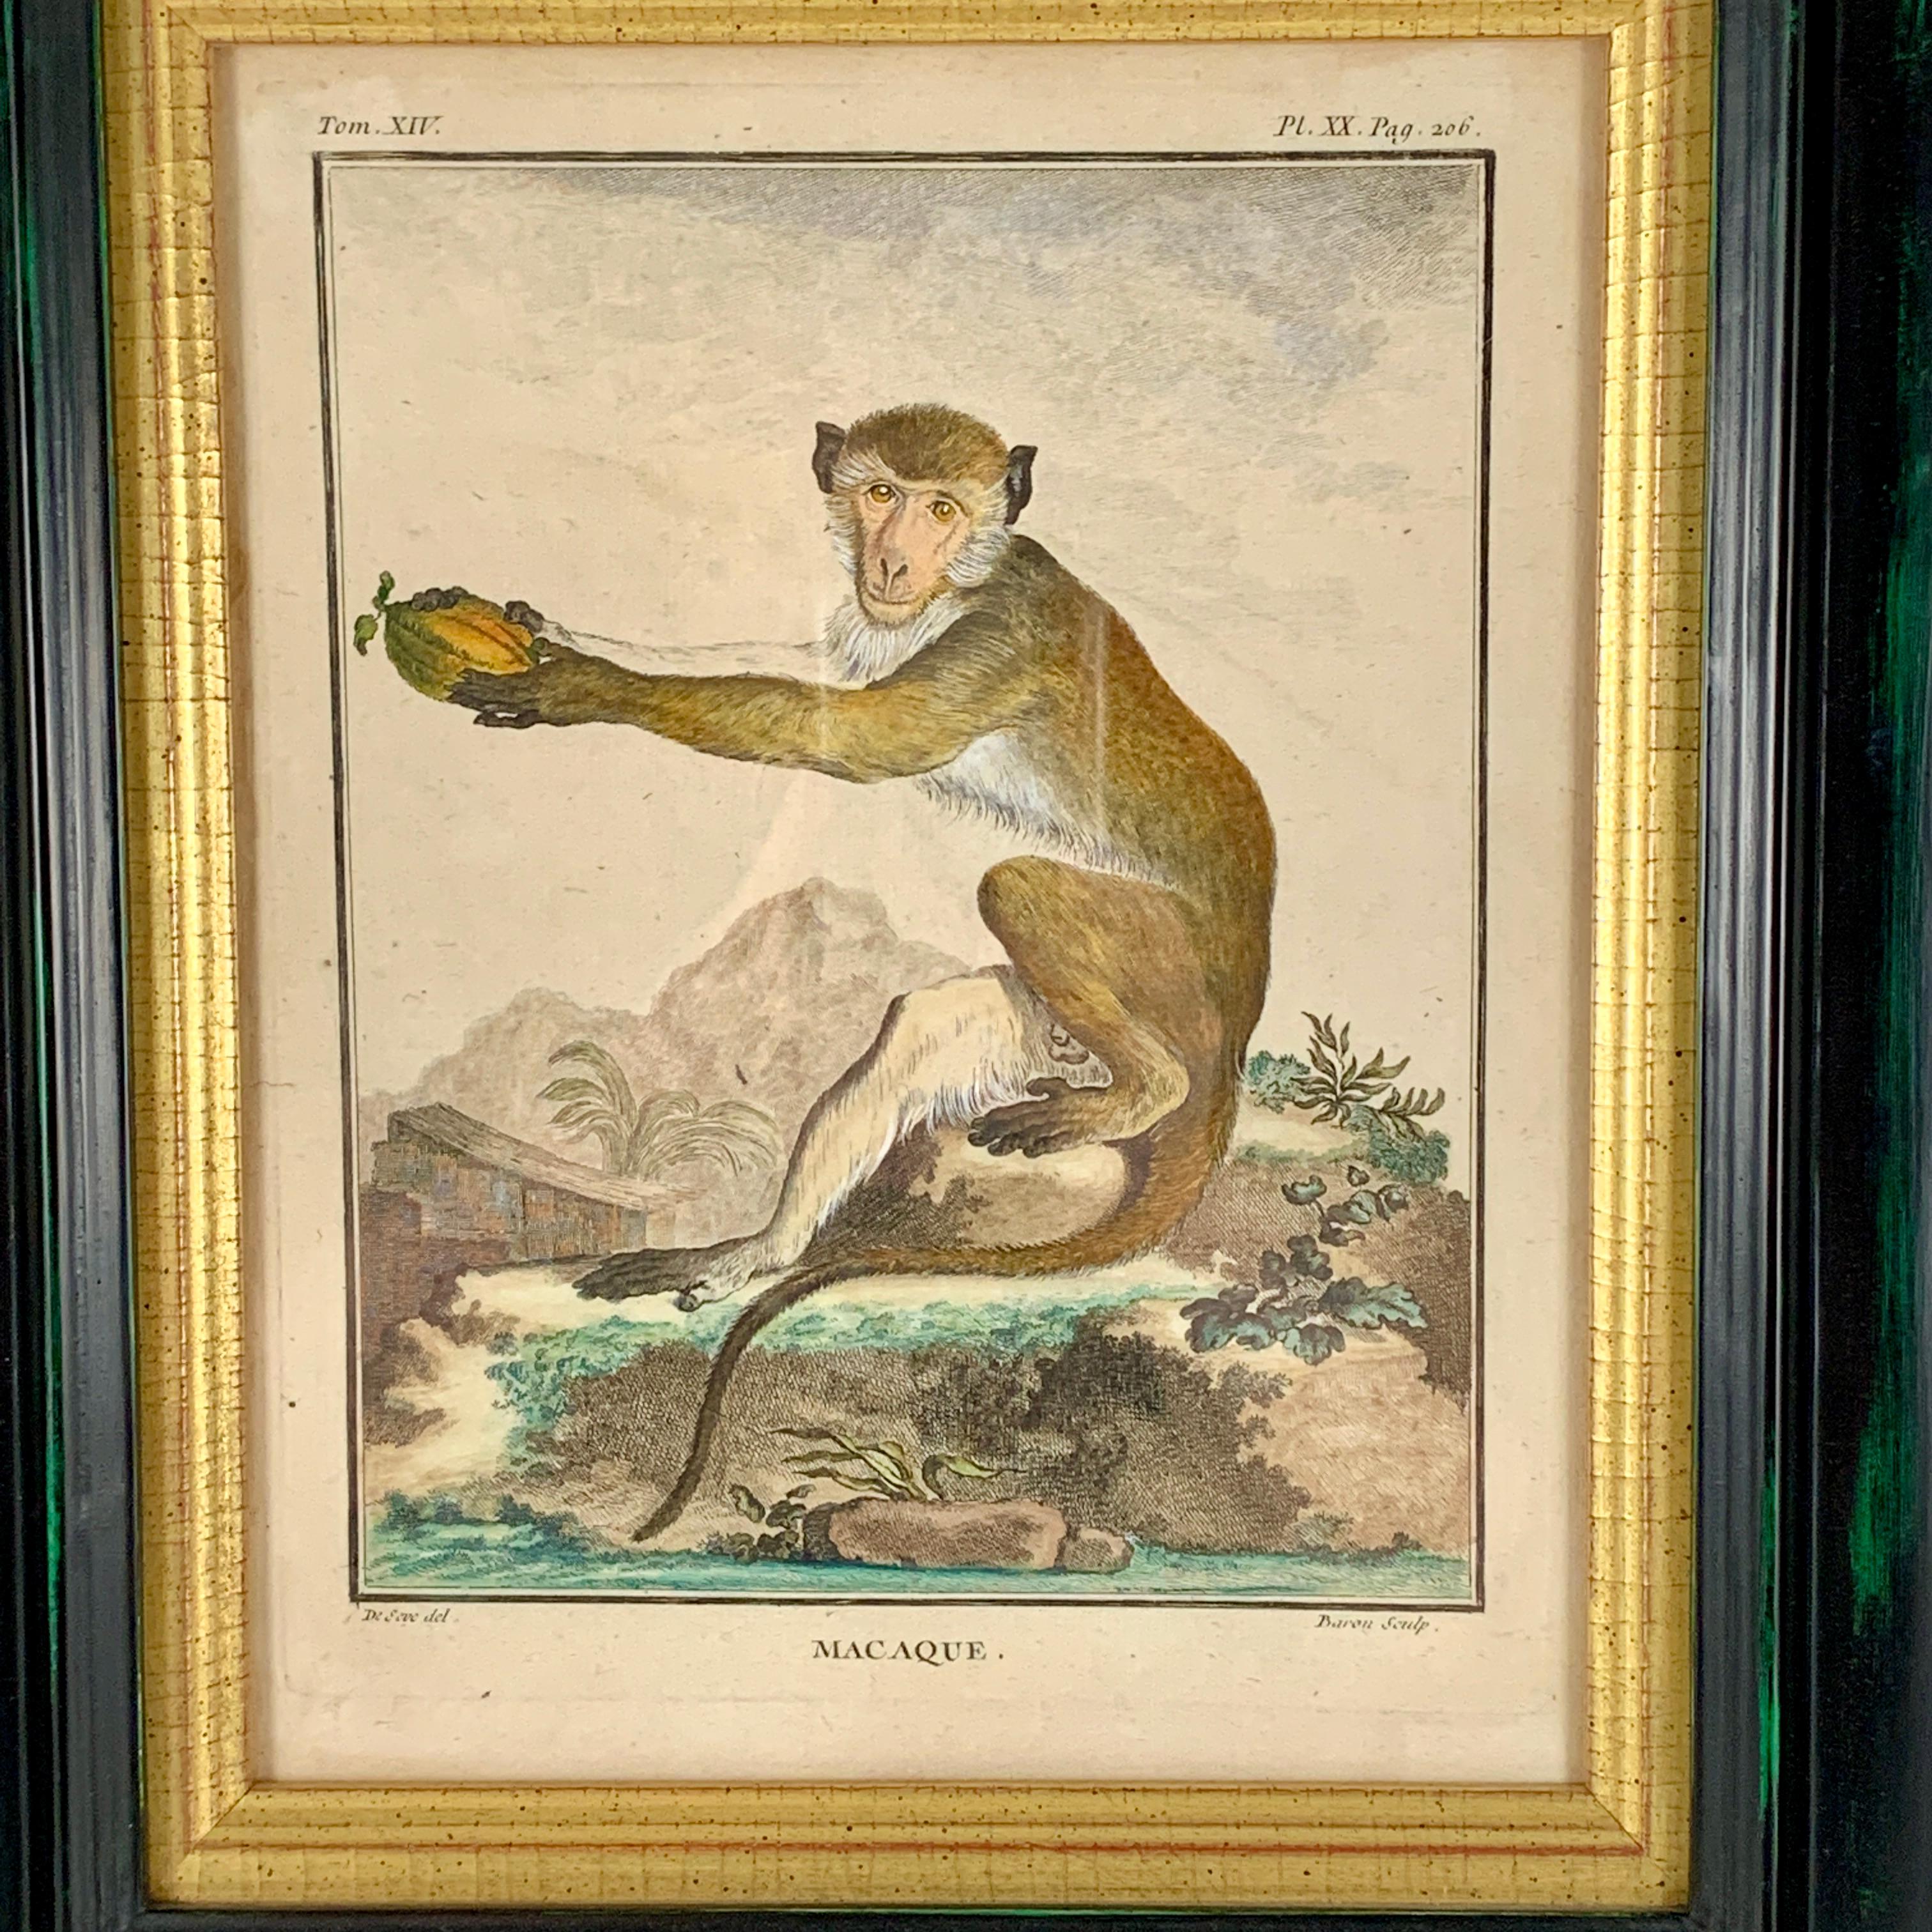 Assiette au singe magnifiquement encadrée de la série Buffon Comte de Quadrúpedes par Georges-Louis Leclerc, France - vers 1770.

Gravure sur cuivre, coloriée à la main, intitulée Macaque, tirée de l'